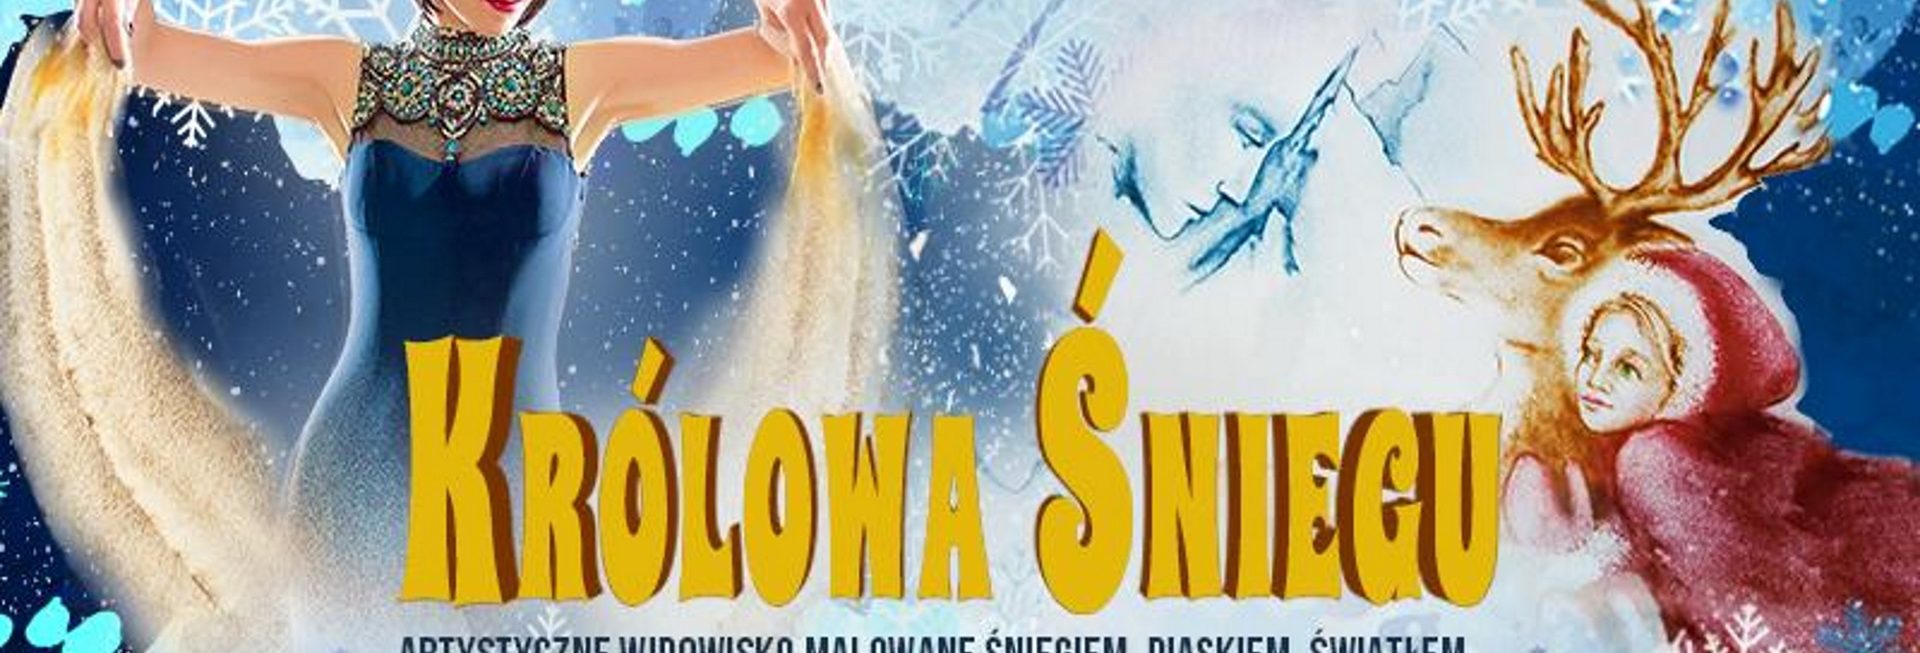 Zdjęcie - plakat zapraszający na występ teatralny Królowa Śniegu. Plakat graficzny w scenerii śnieżnej z pustacią Królewnej Śnieżki.  